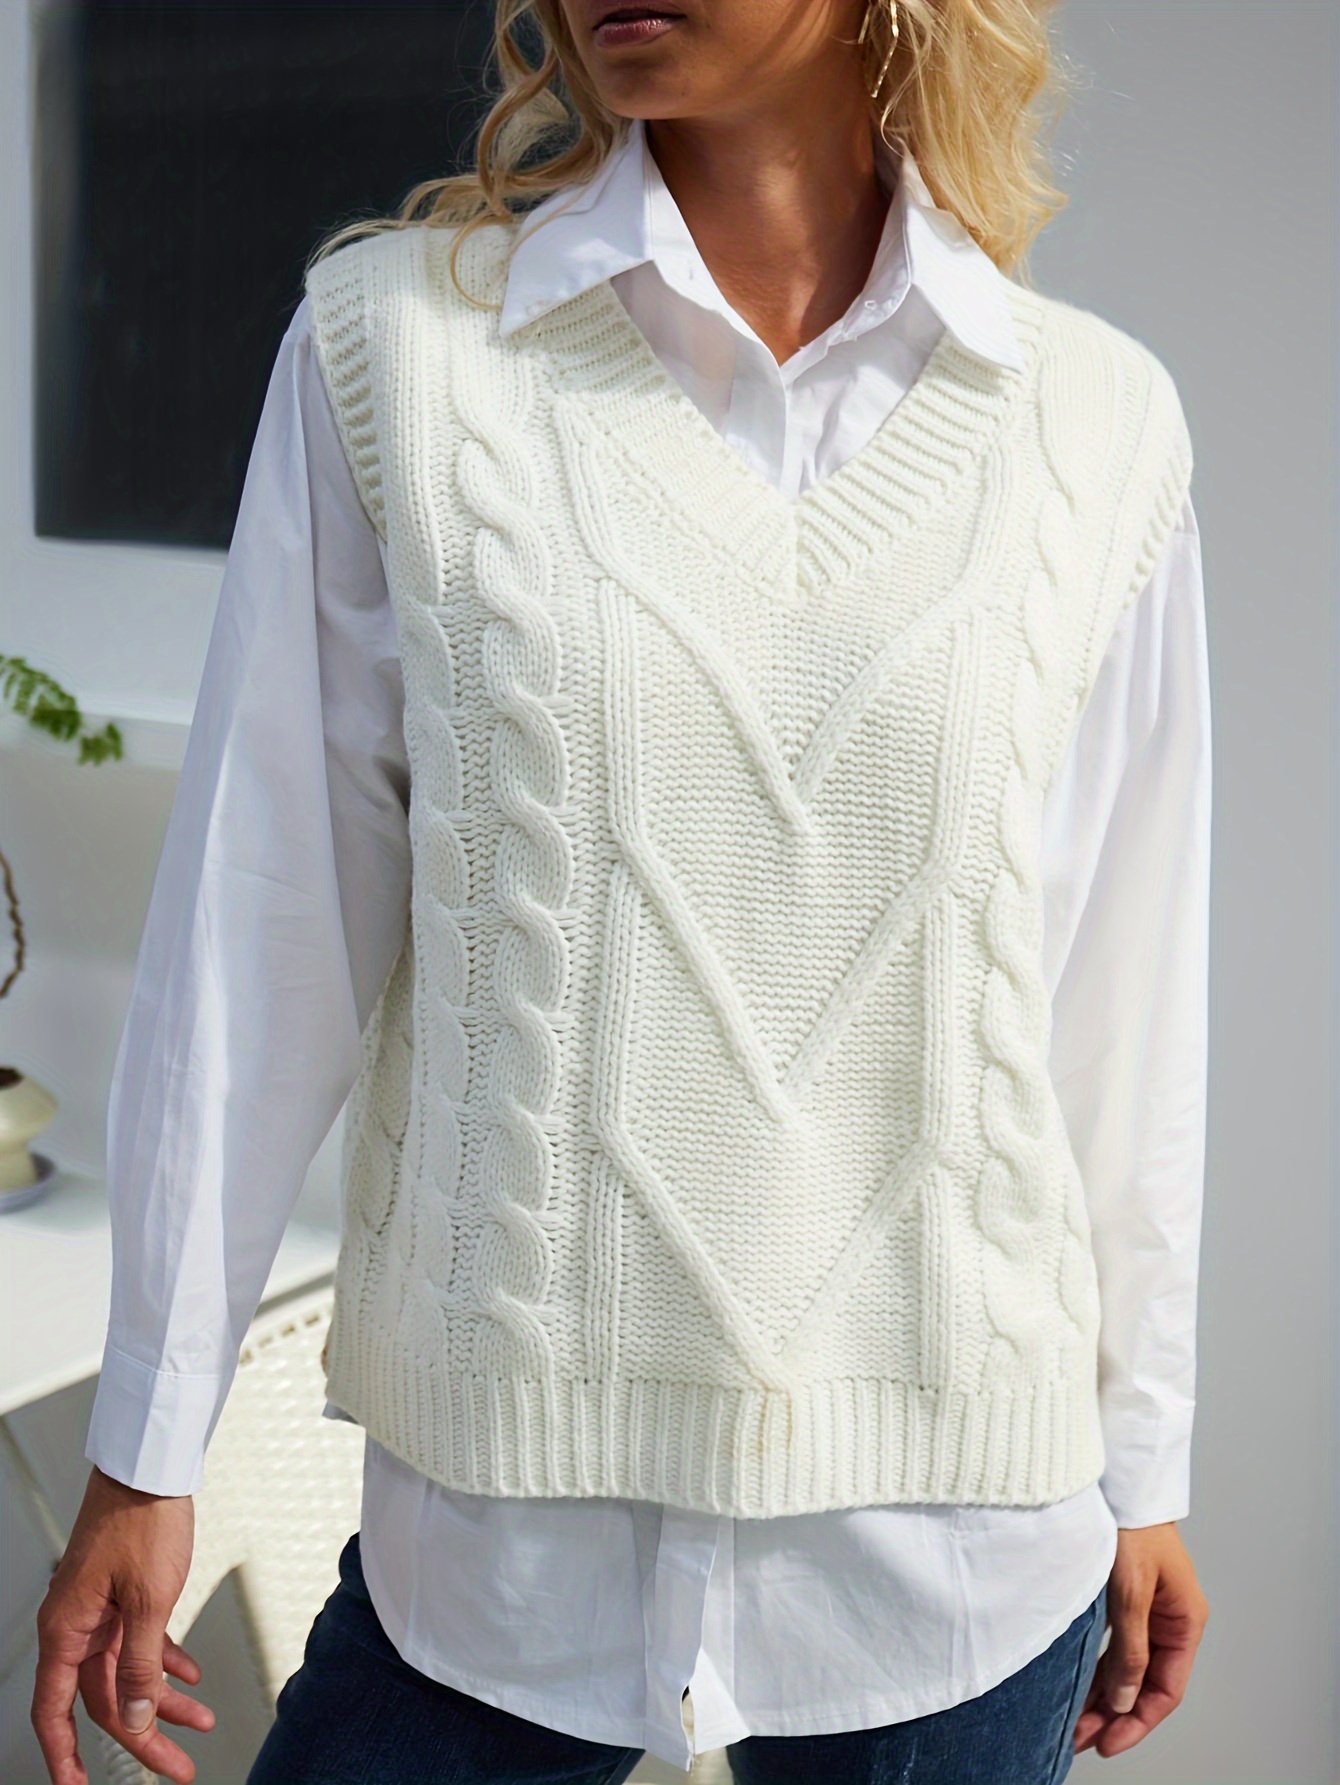 Solid Cable Knit Vest Elegant V Neck Sleeveless Sweater Vest